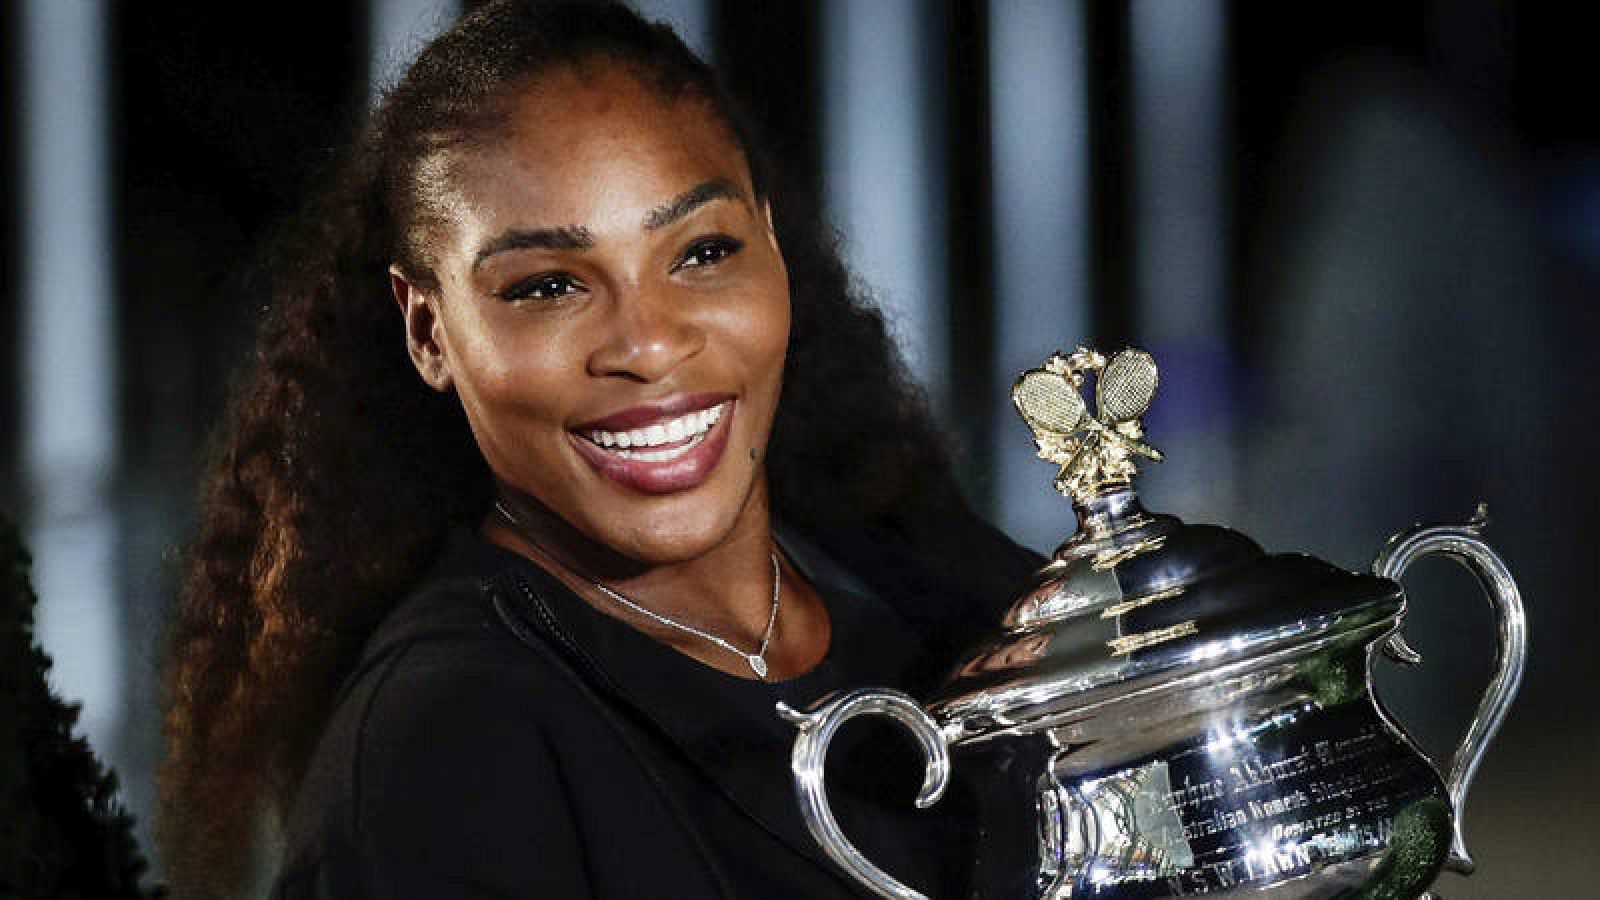 La tenista Serena Williams, única mujer entre los cien deportistas con más ingresos.